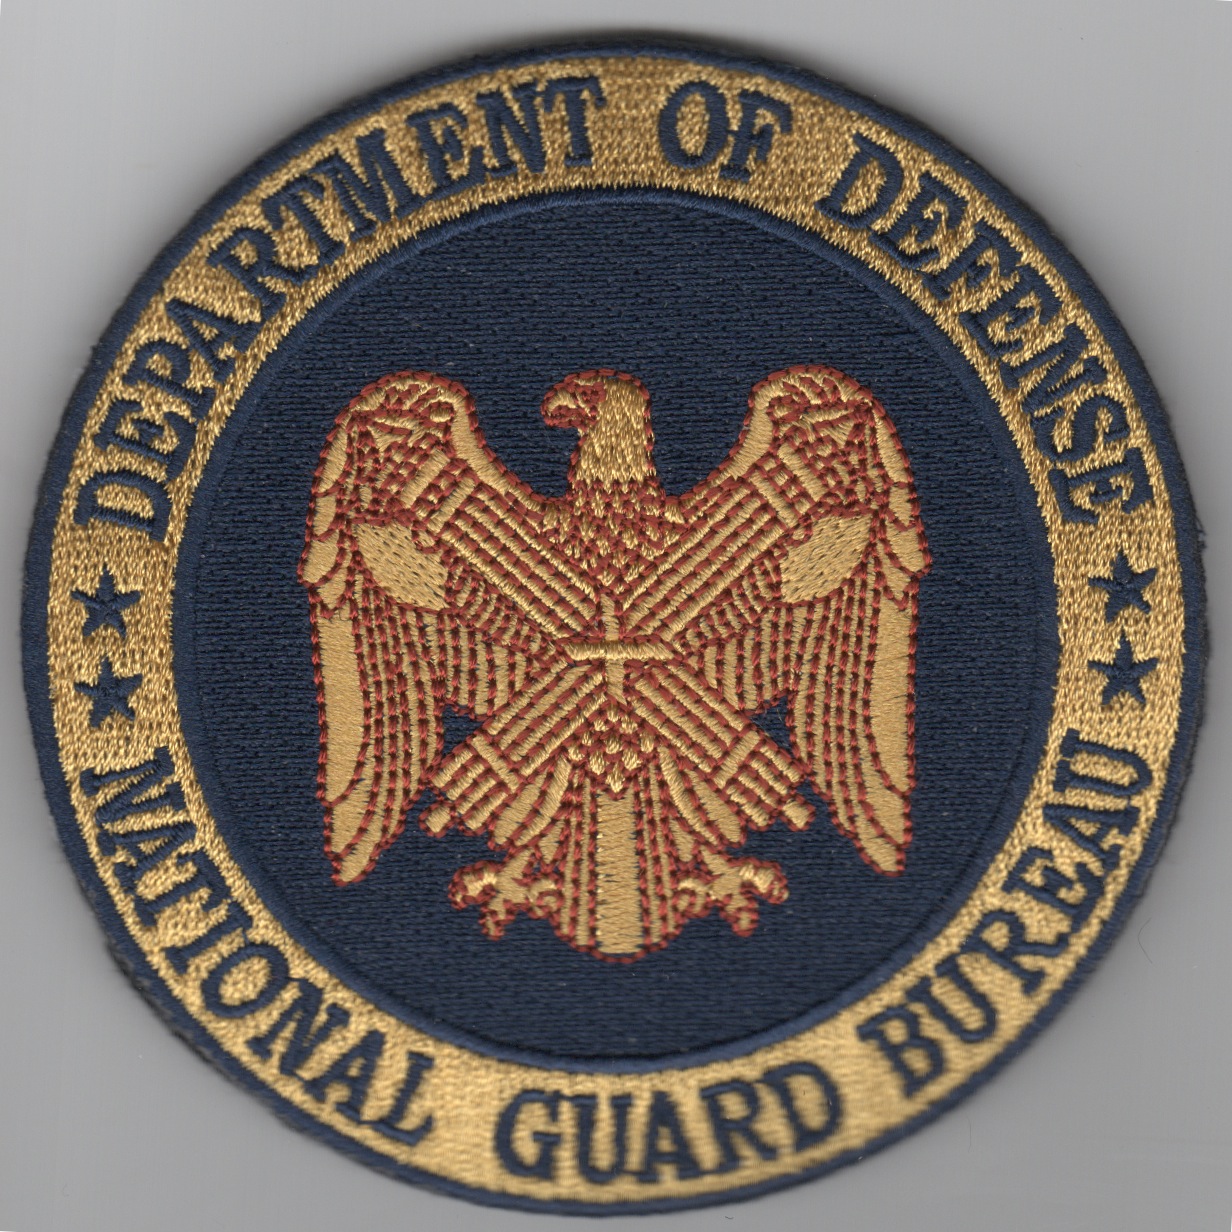 National Guard Bureau/DoD (Velcro)